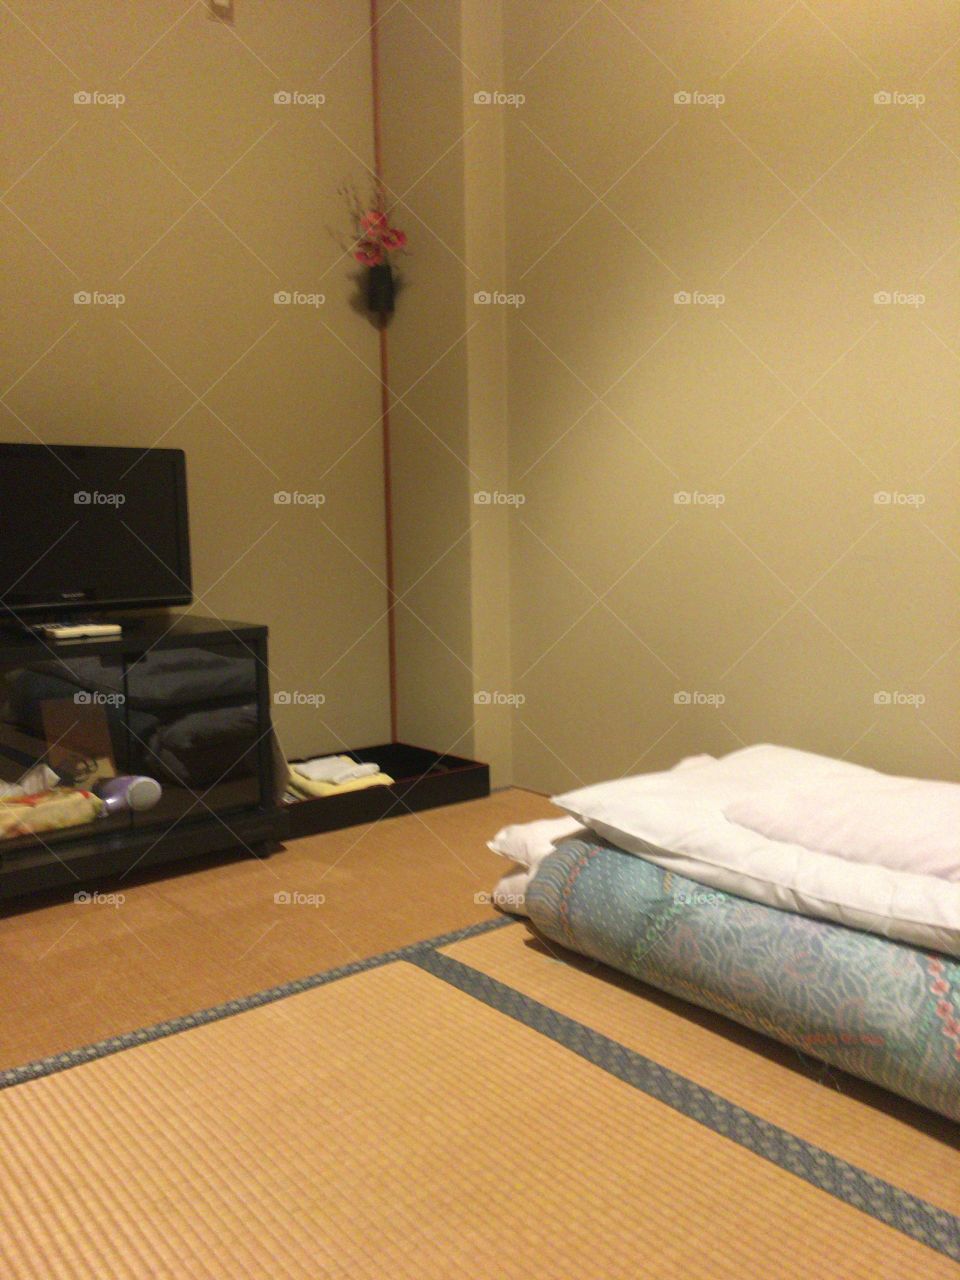 Japanese room of Japanese style inn 